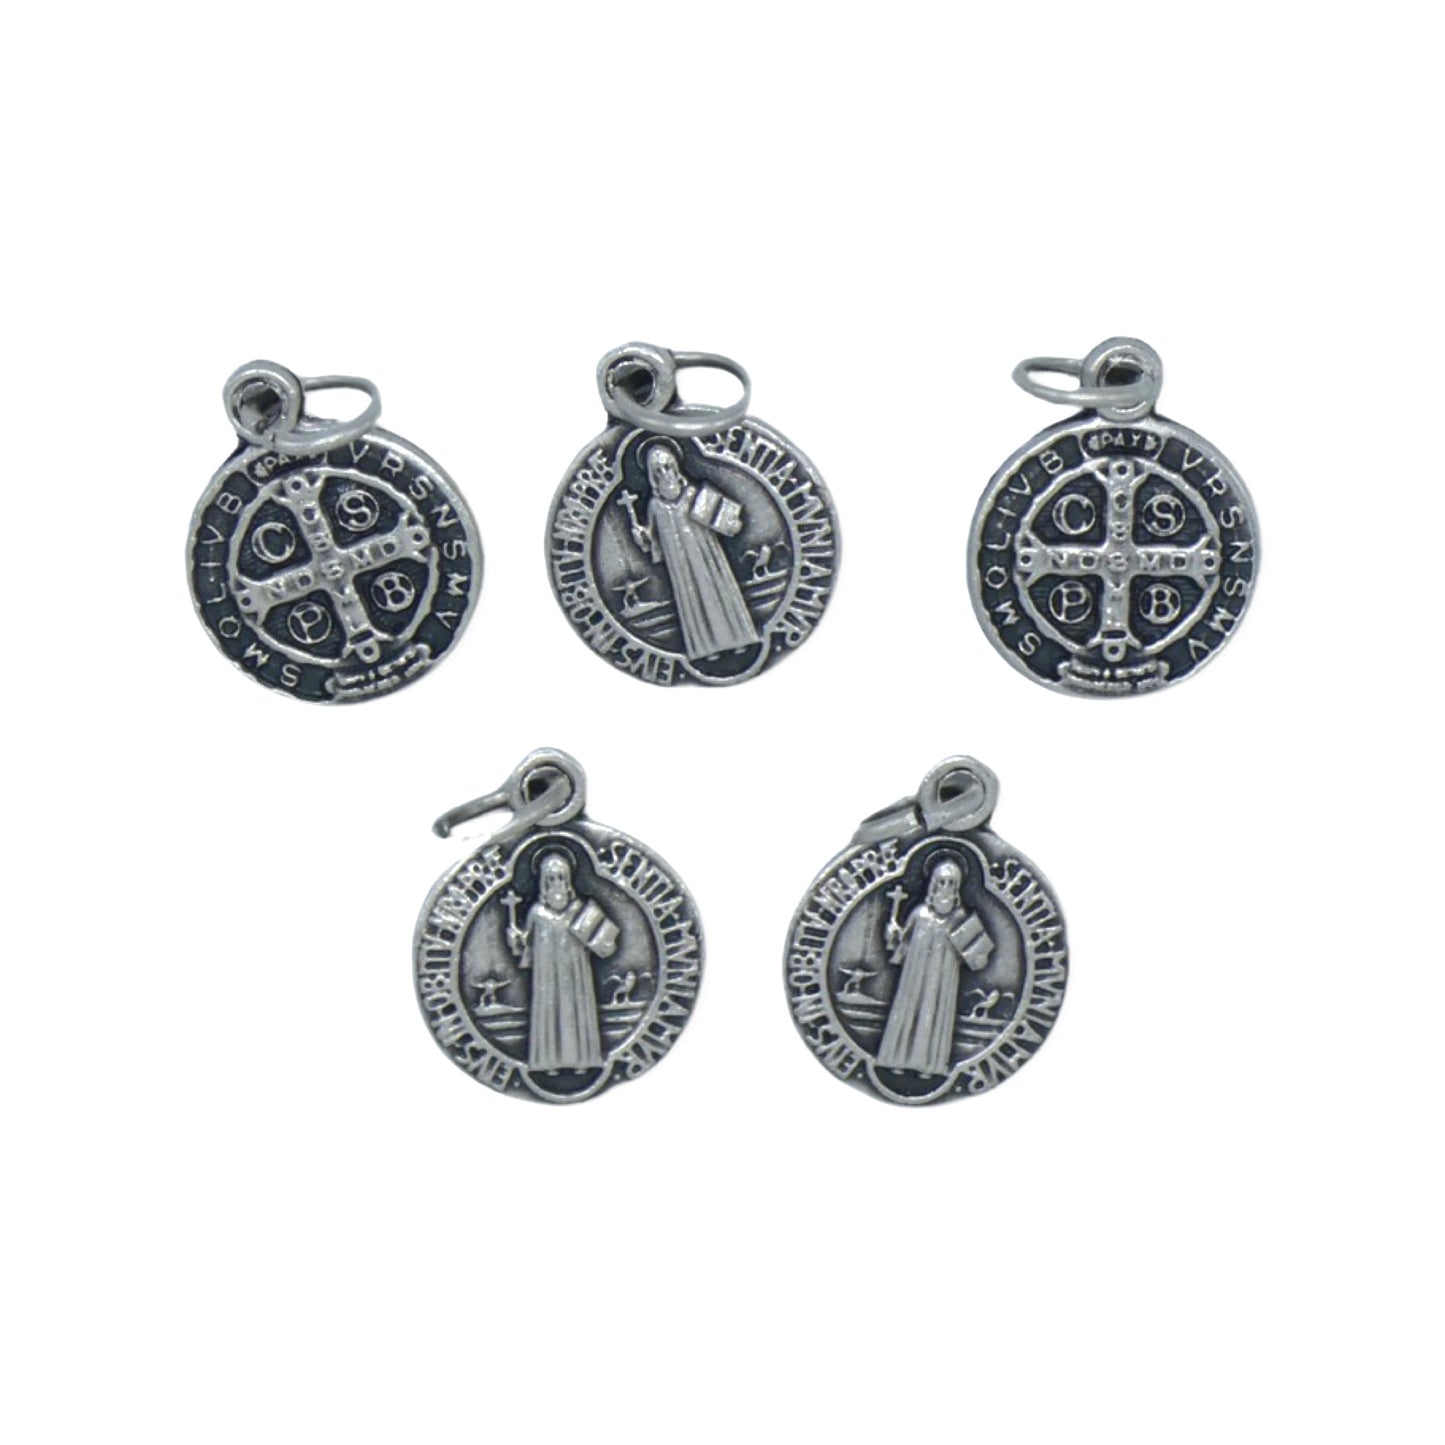 Set of 5 St. Benedict Medals